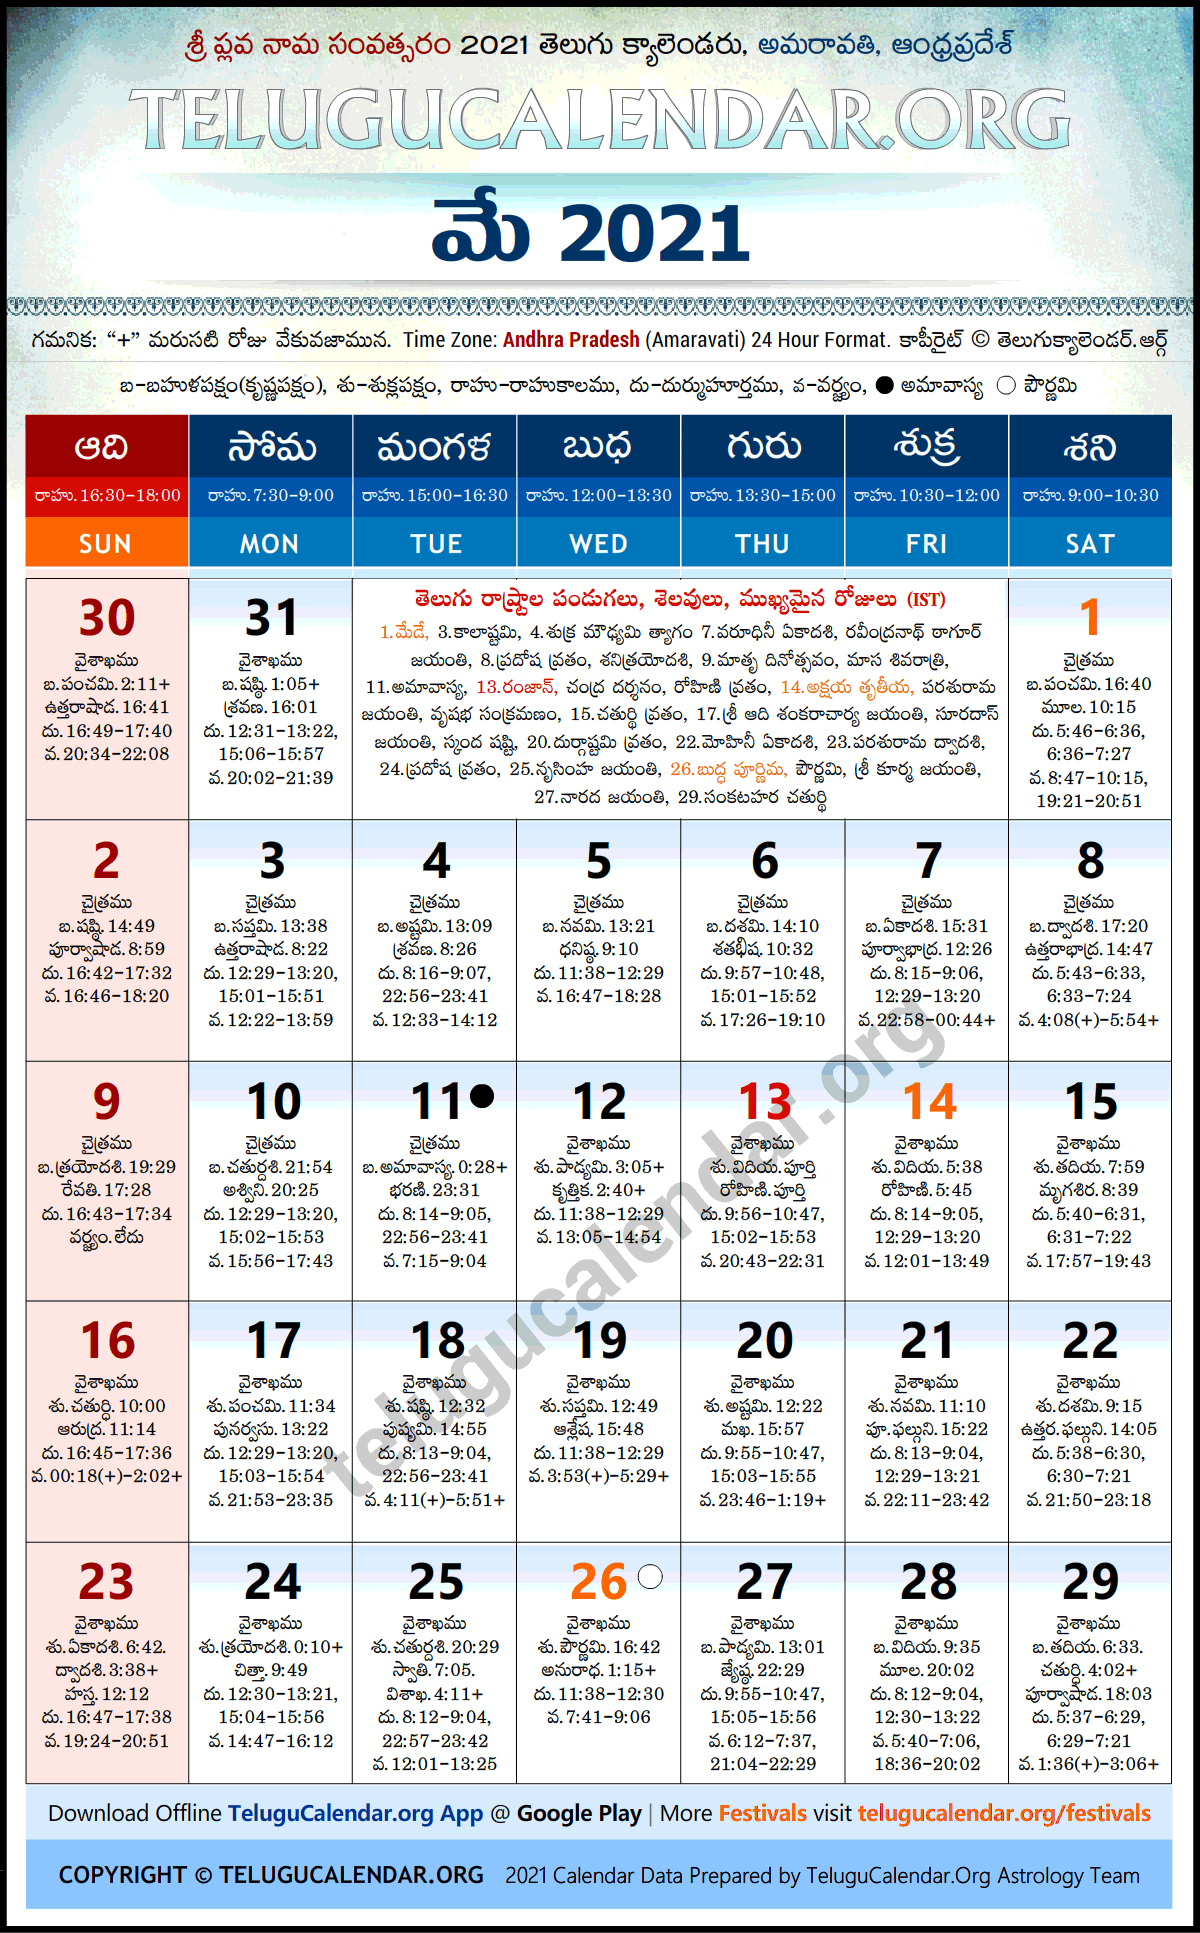 Eenadu Telugu Calendar 2022 - August Calendar 2022